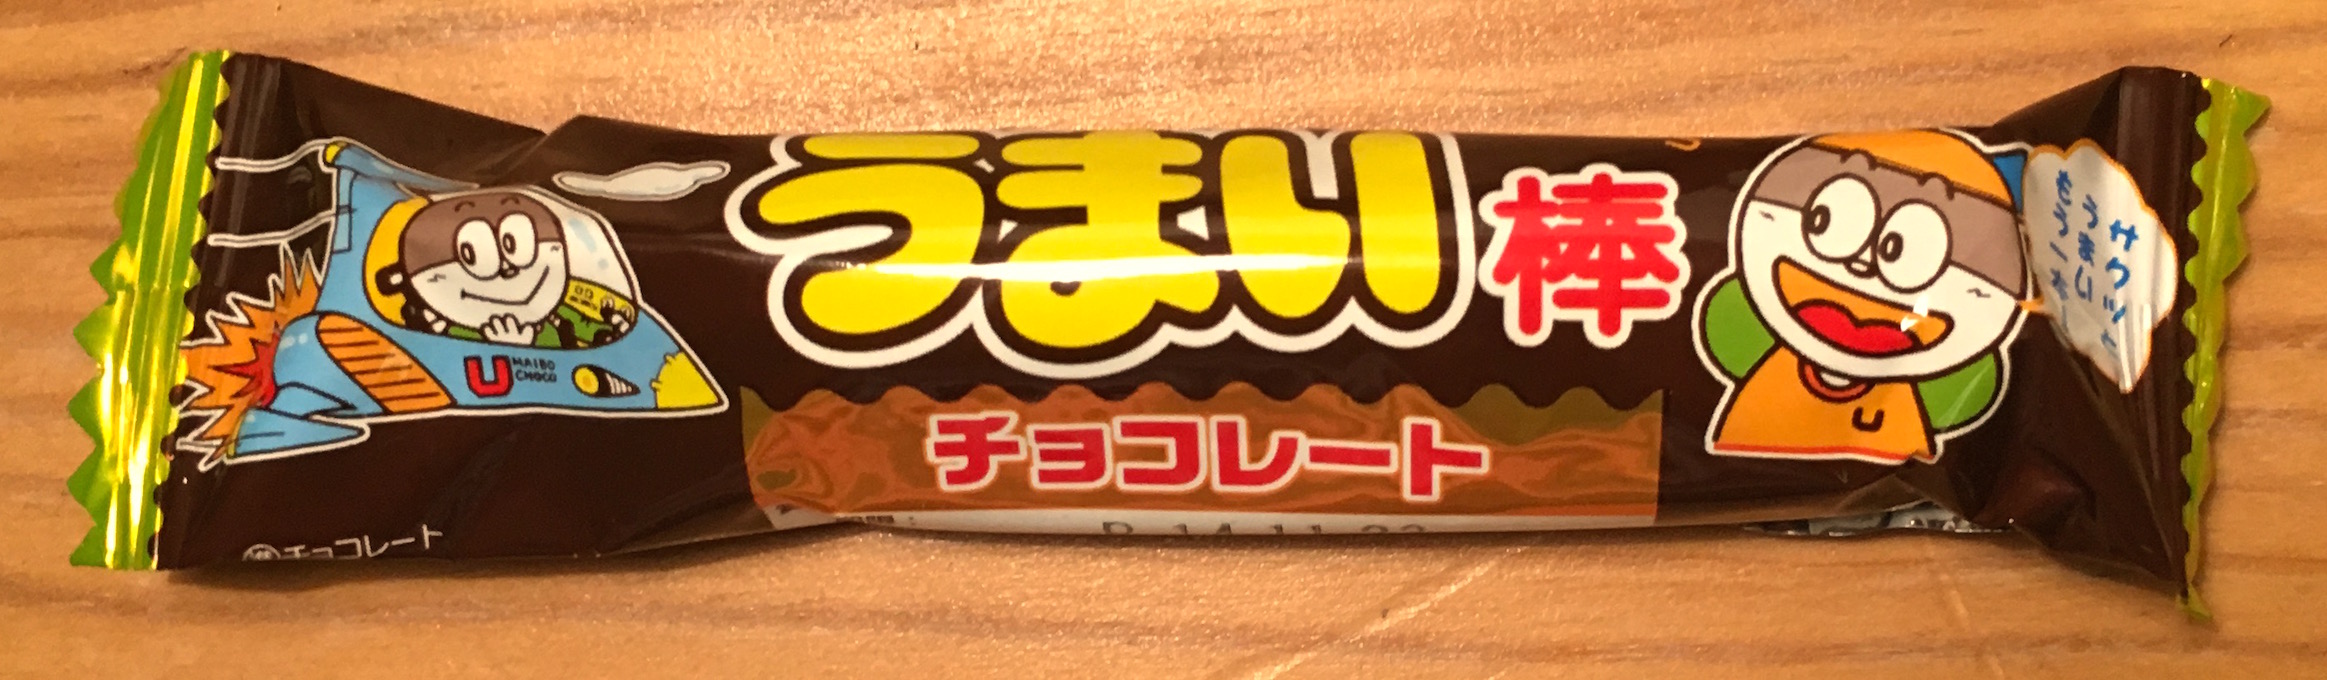 Umaibo_chocolat_1